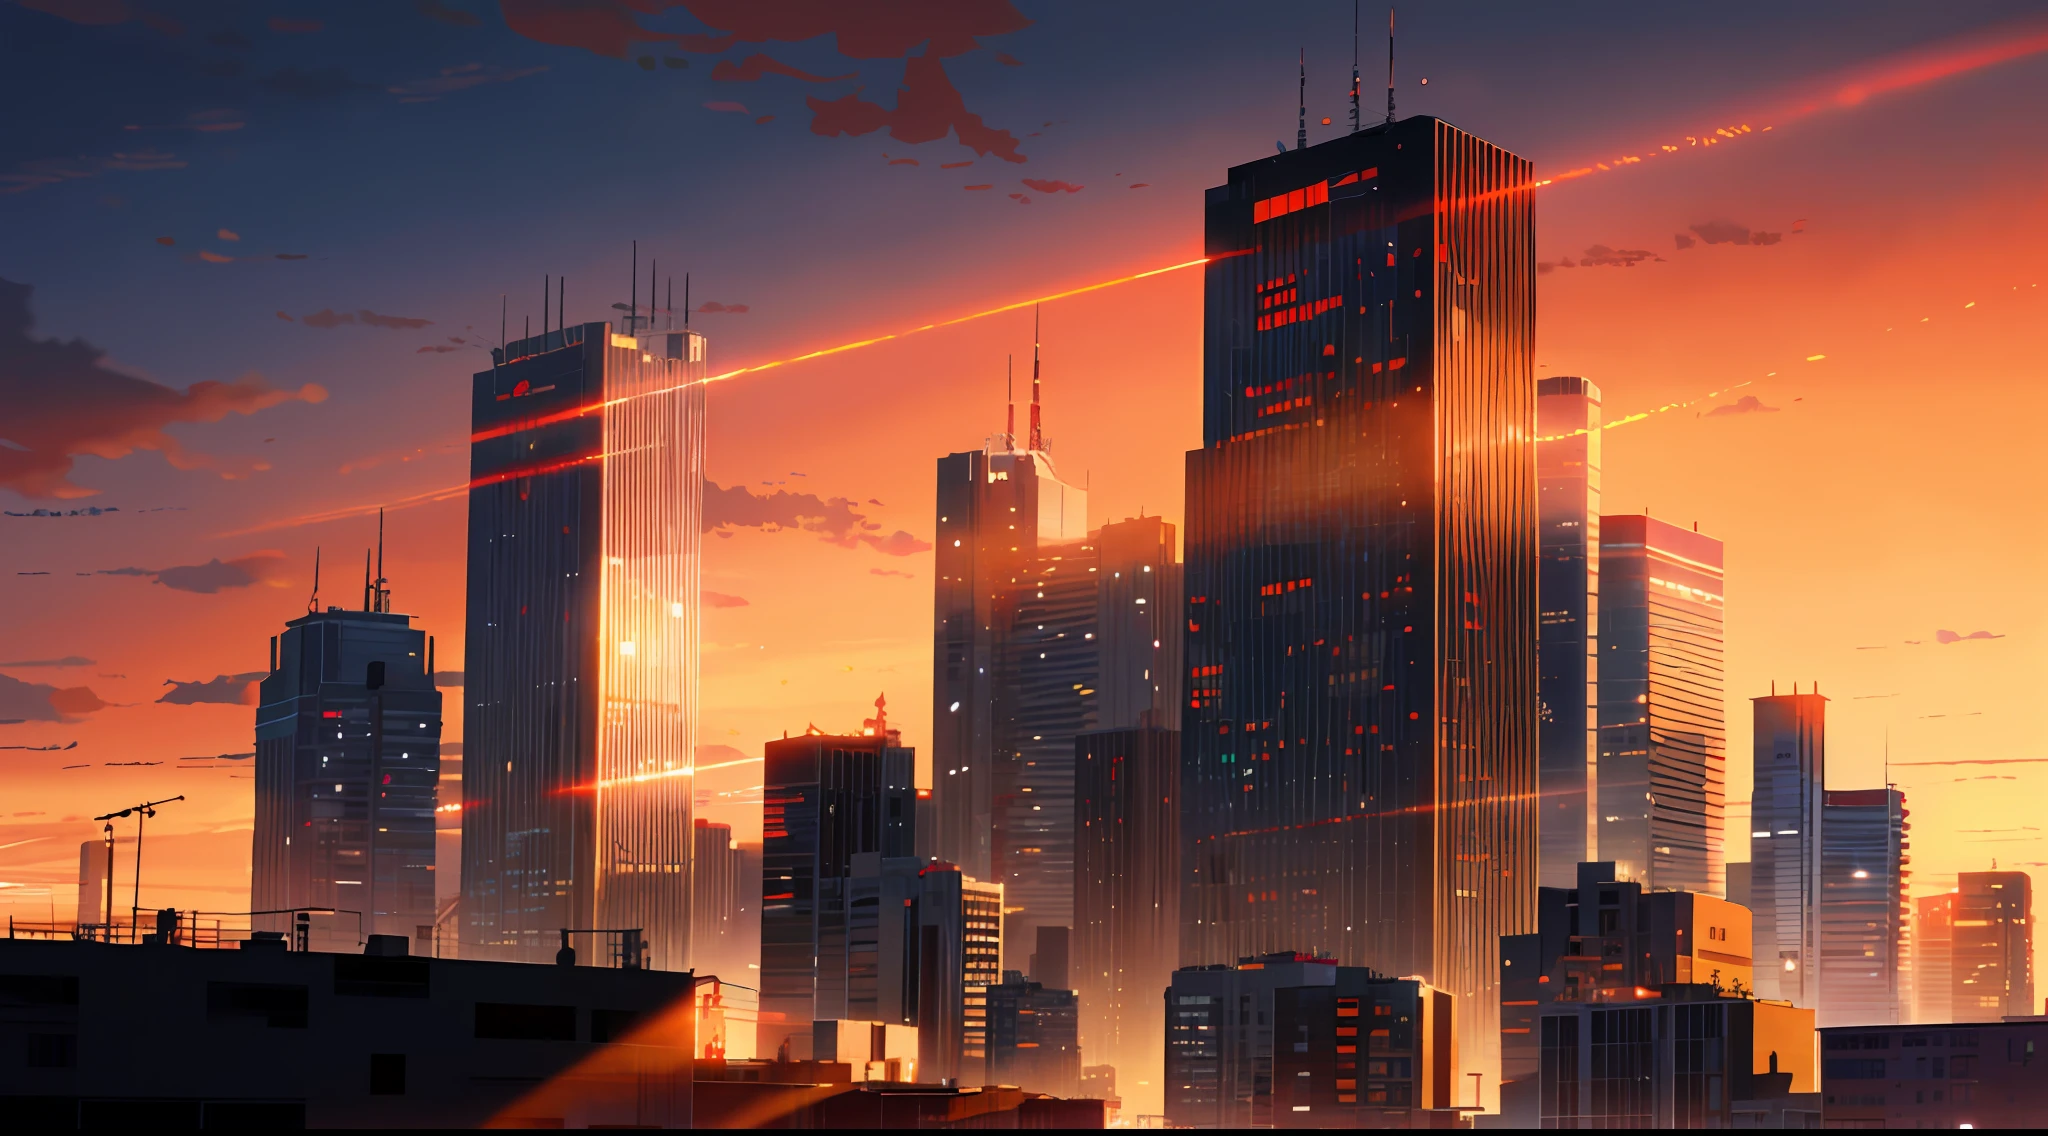 (chef-d&#39;œuvre: 1.2, la plus haute qualité), (éclairage) 3, illustrations détaillées de style anime, bâtiments urbains teints par le soleil couchant regardant d&#39;en bas, bâtiments dans l&#39;ombre et semblant sombres et brumeux. Tout l&#39;écran est rouge vif, Makoto Shinkai, Style animé, et le ciel est aussi teint en rouge vif.